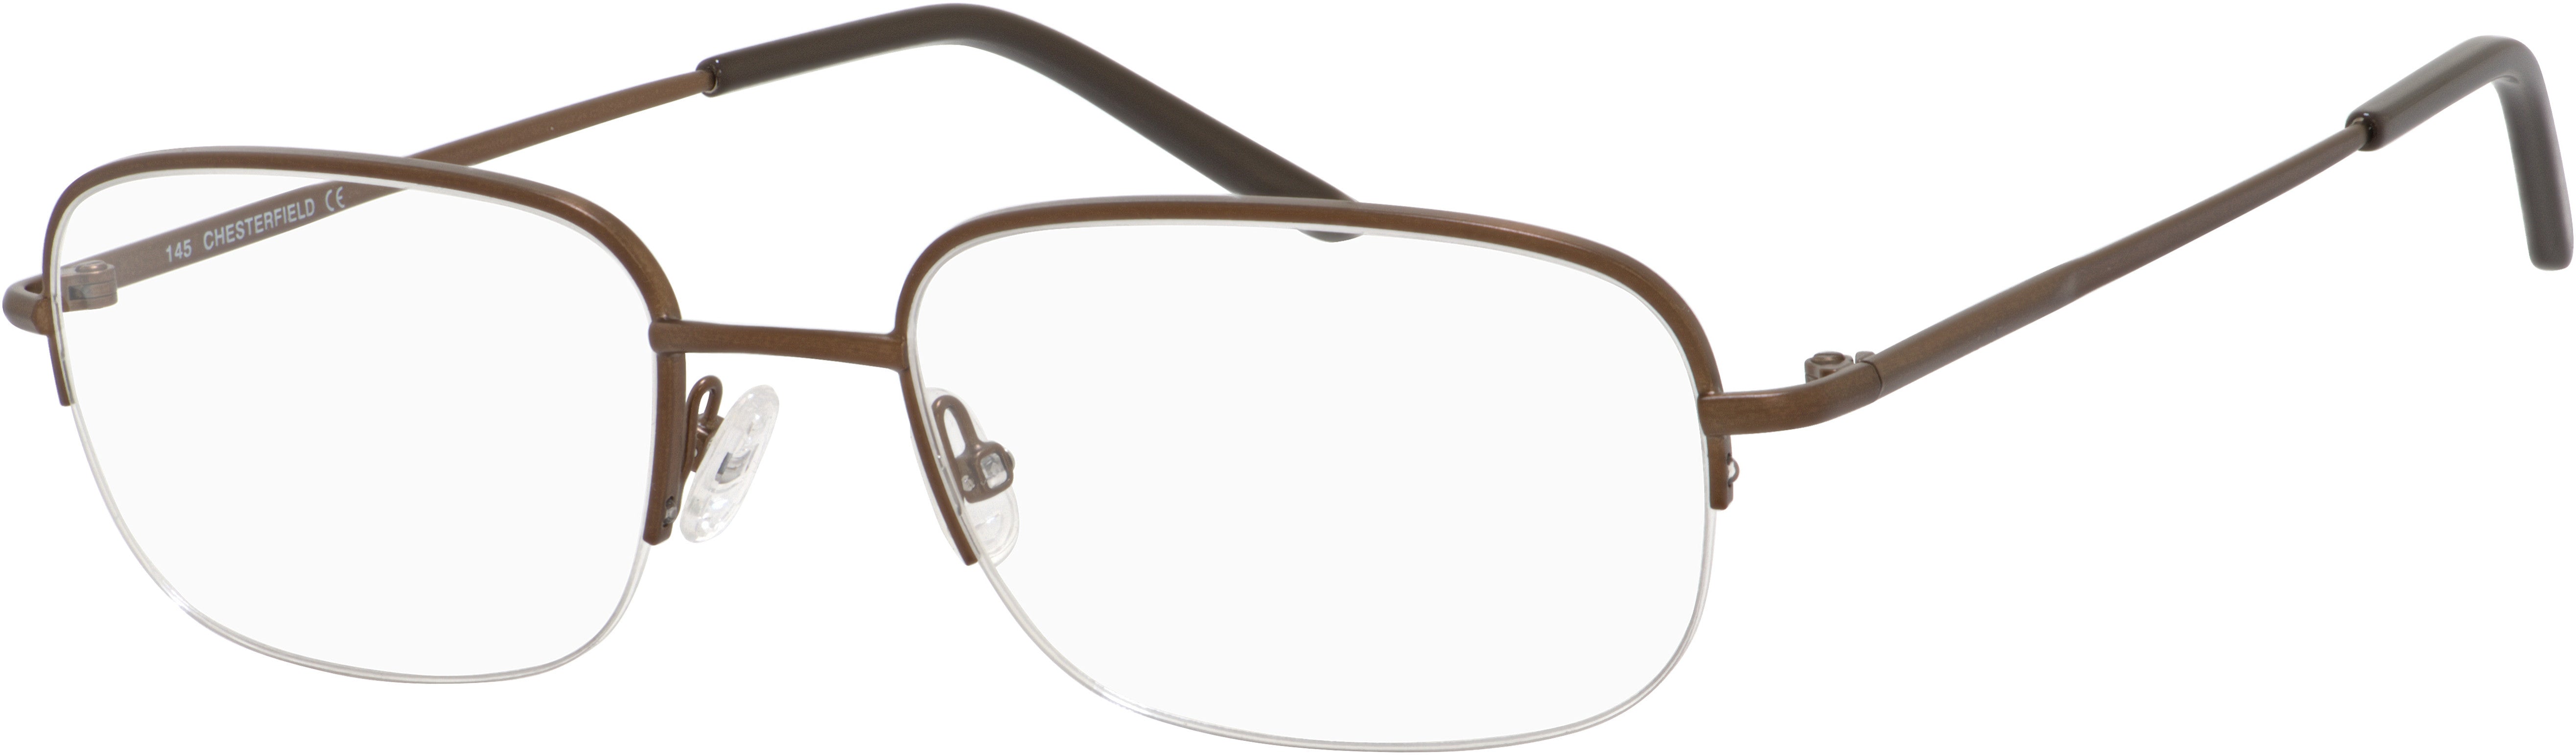  Chesterfield 883 Rectangular Eyeglasses 009Q-009Q  Brown (00 Demo Lens)